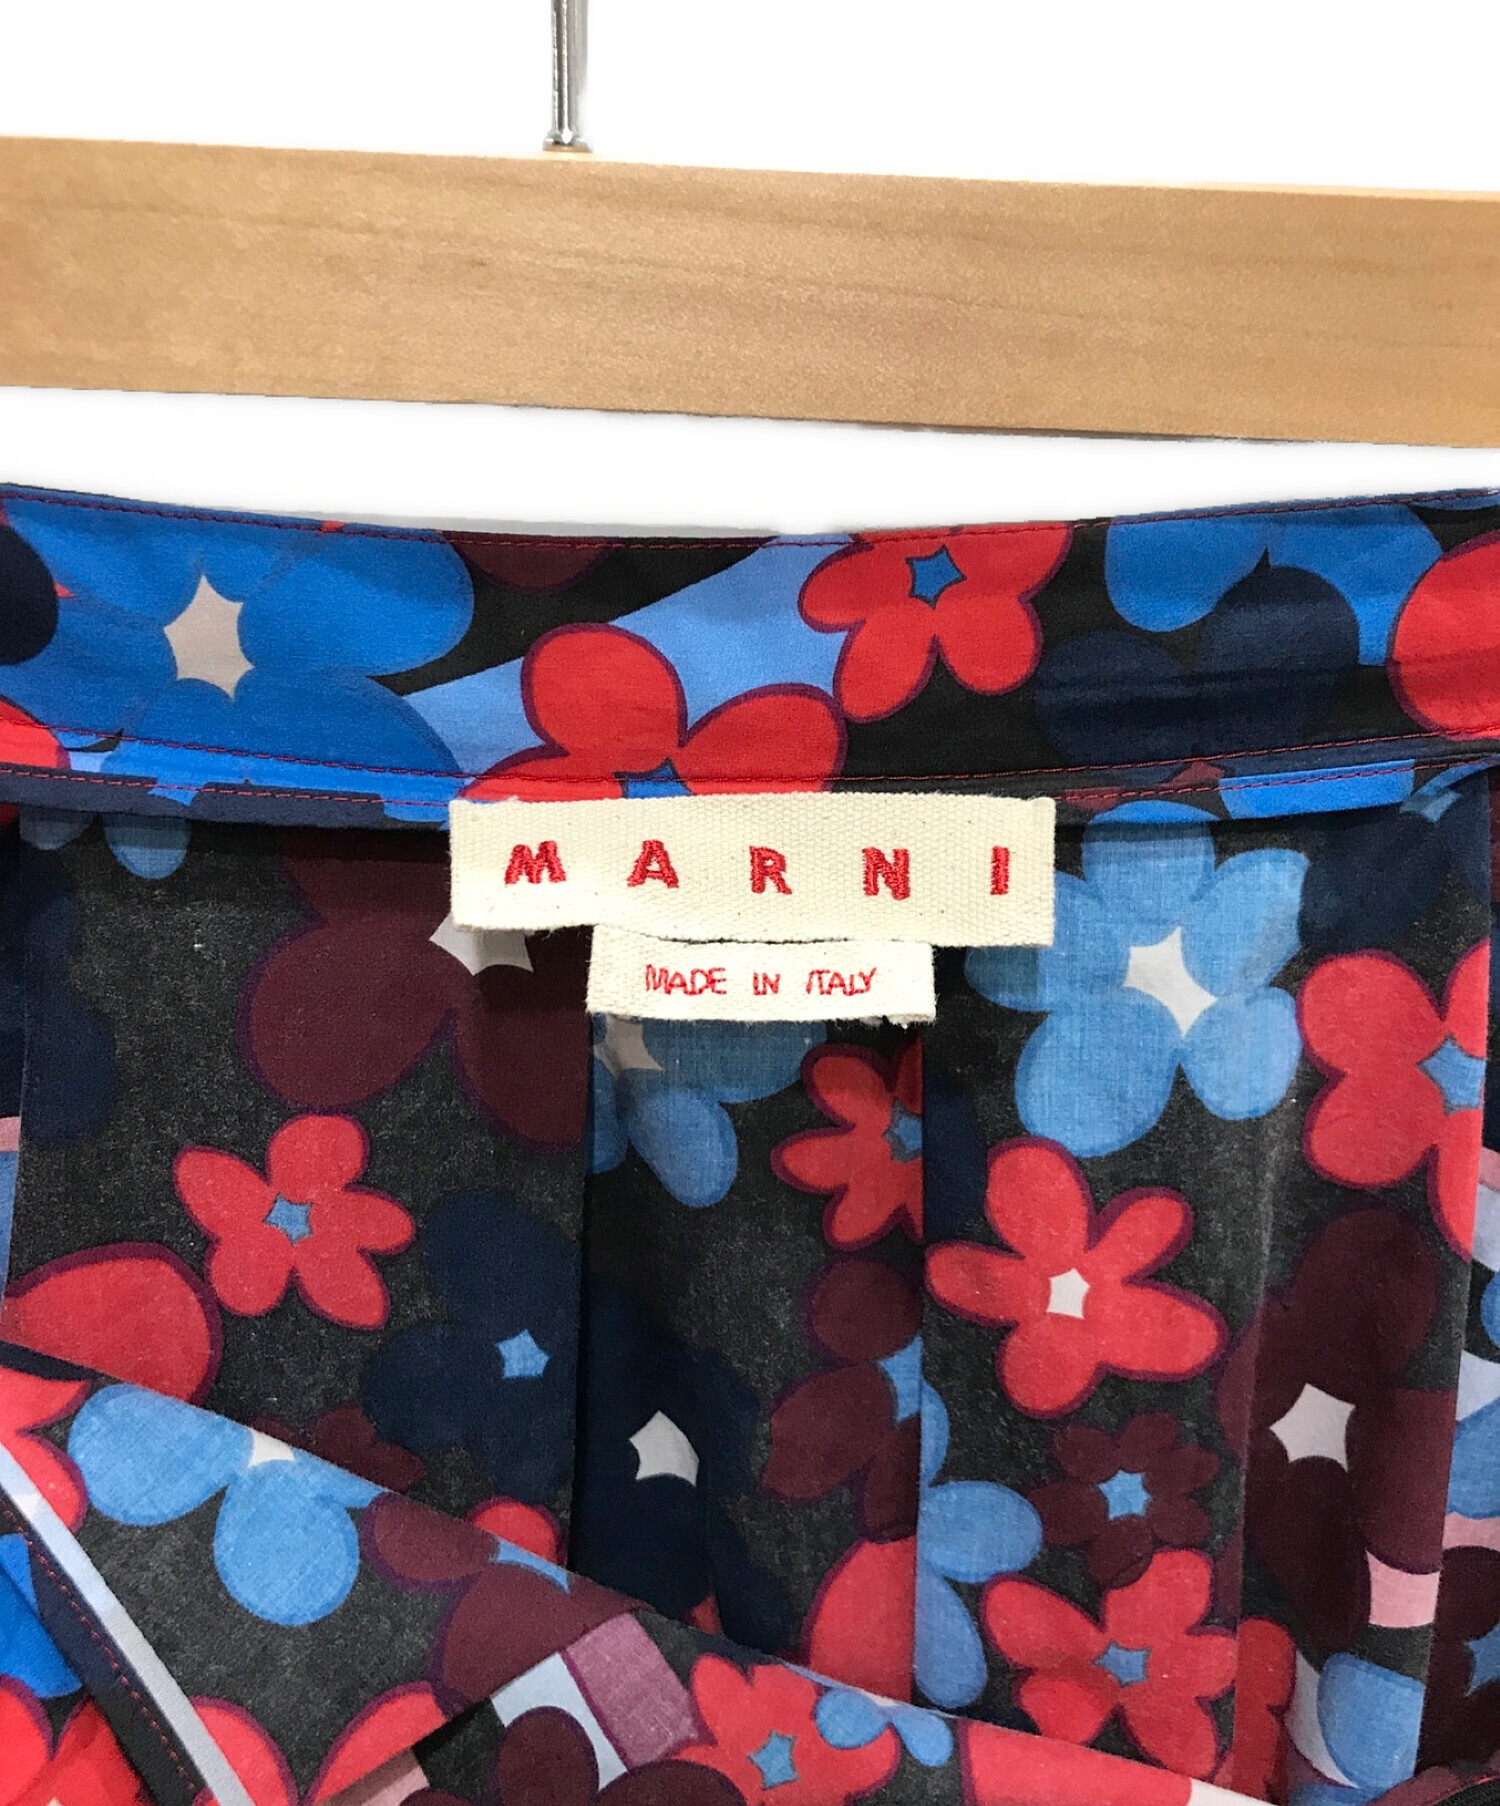 MARNI (マルニ) フラワープリント コットンタックスカート ネイビー×レッド サイズ:36